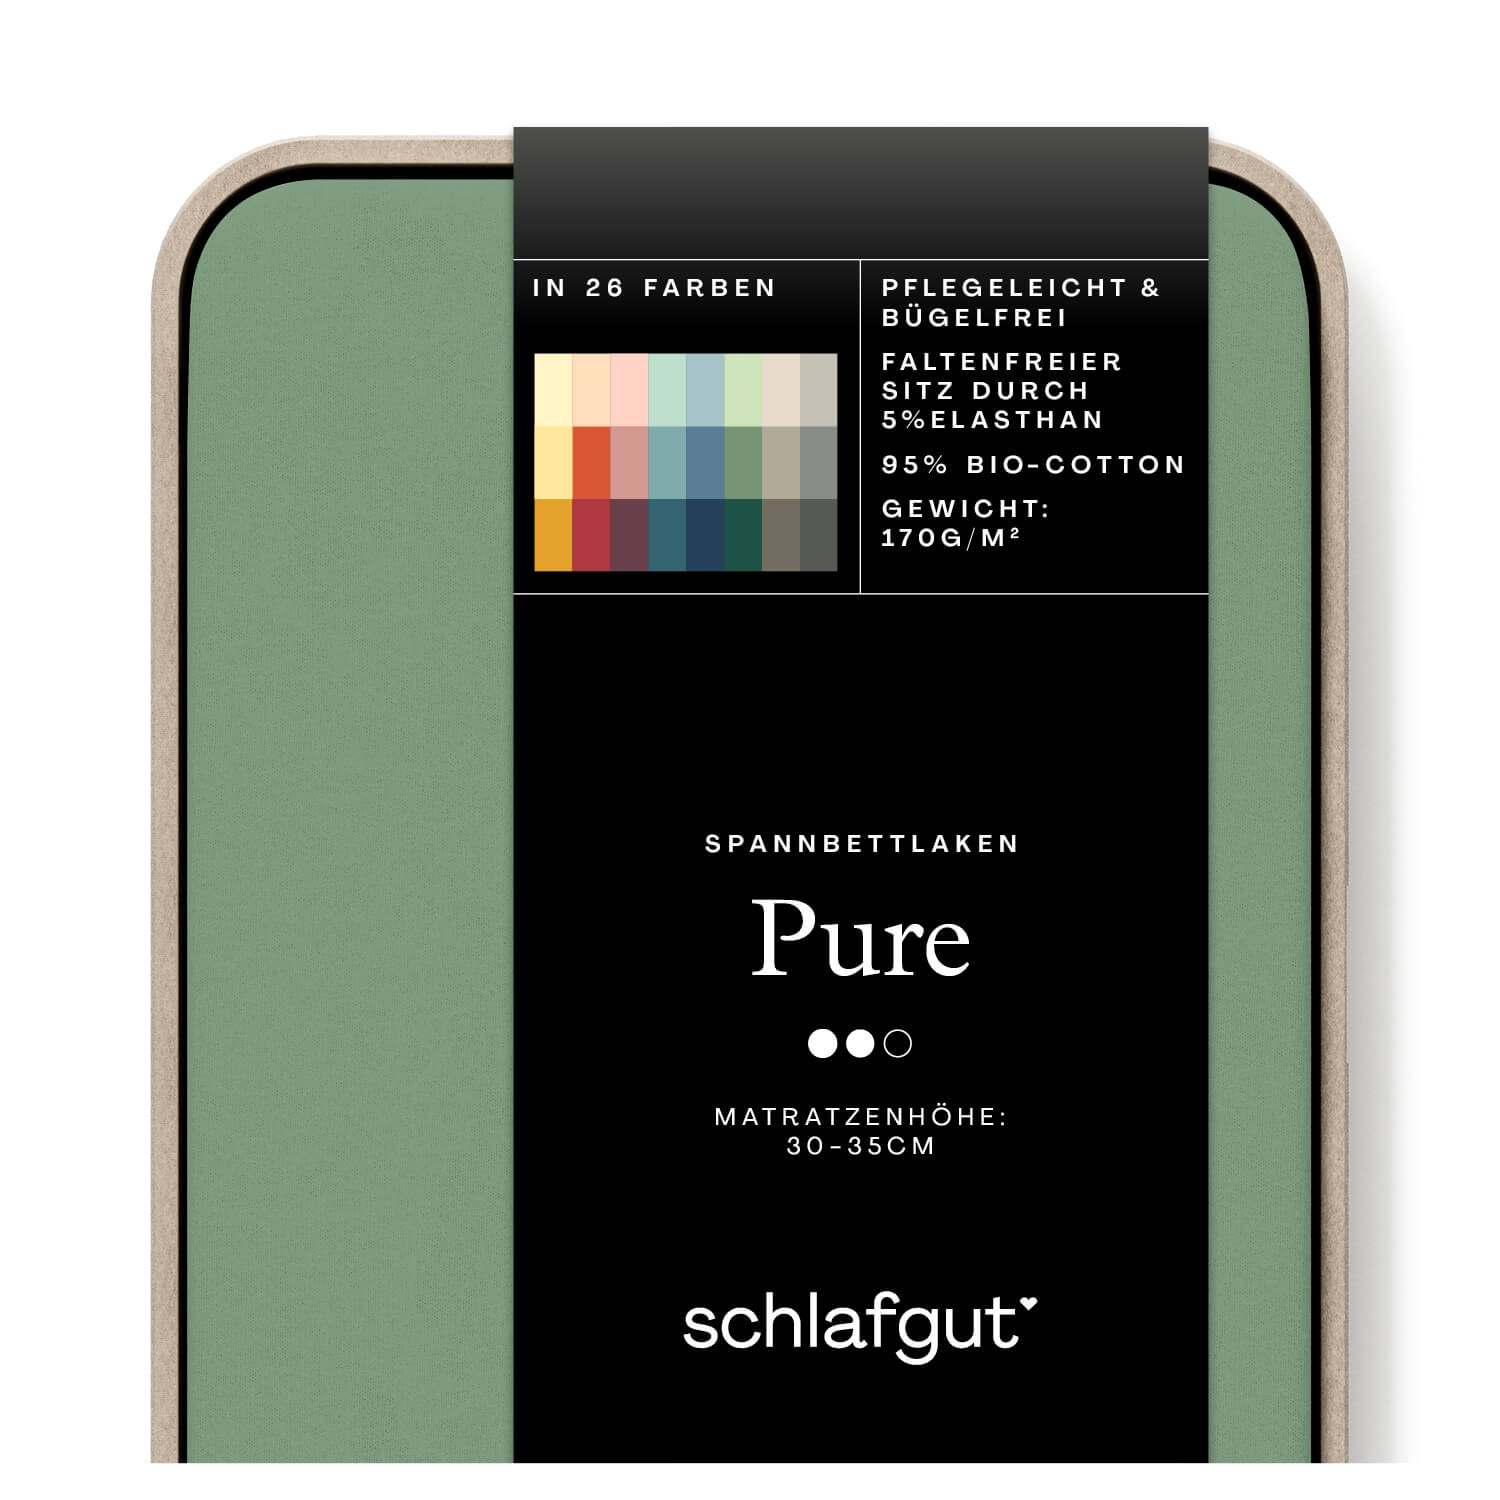 Das Produktbild vom Spannbettlaken der Reihe Pure in Farbe green mid von Schlafgut